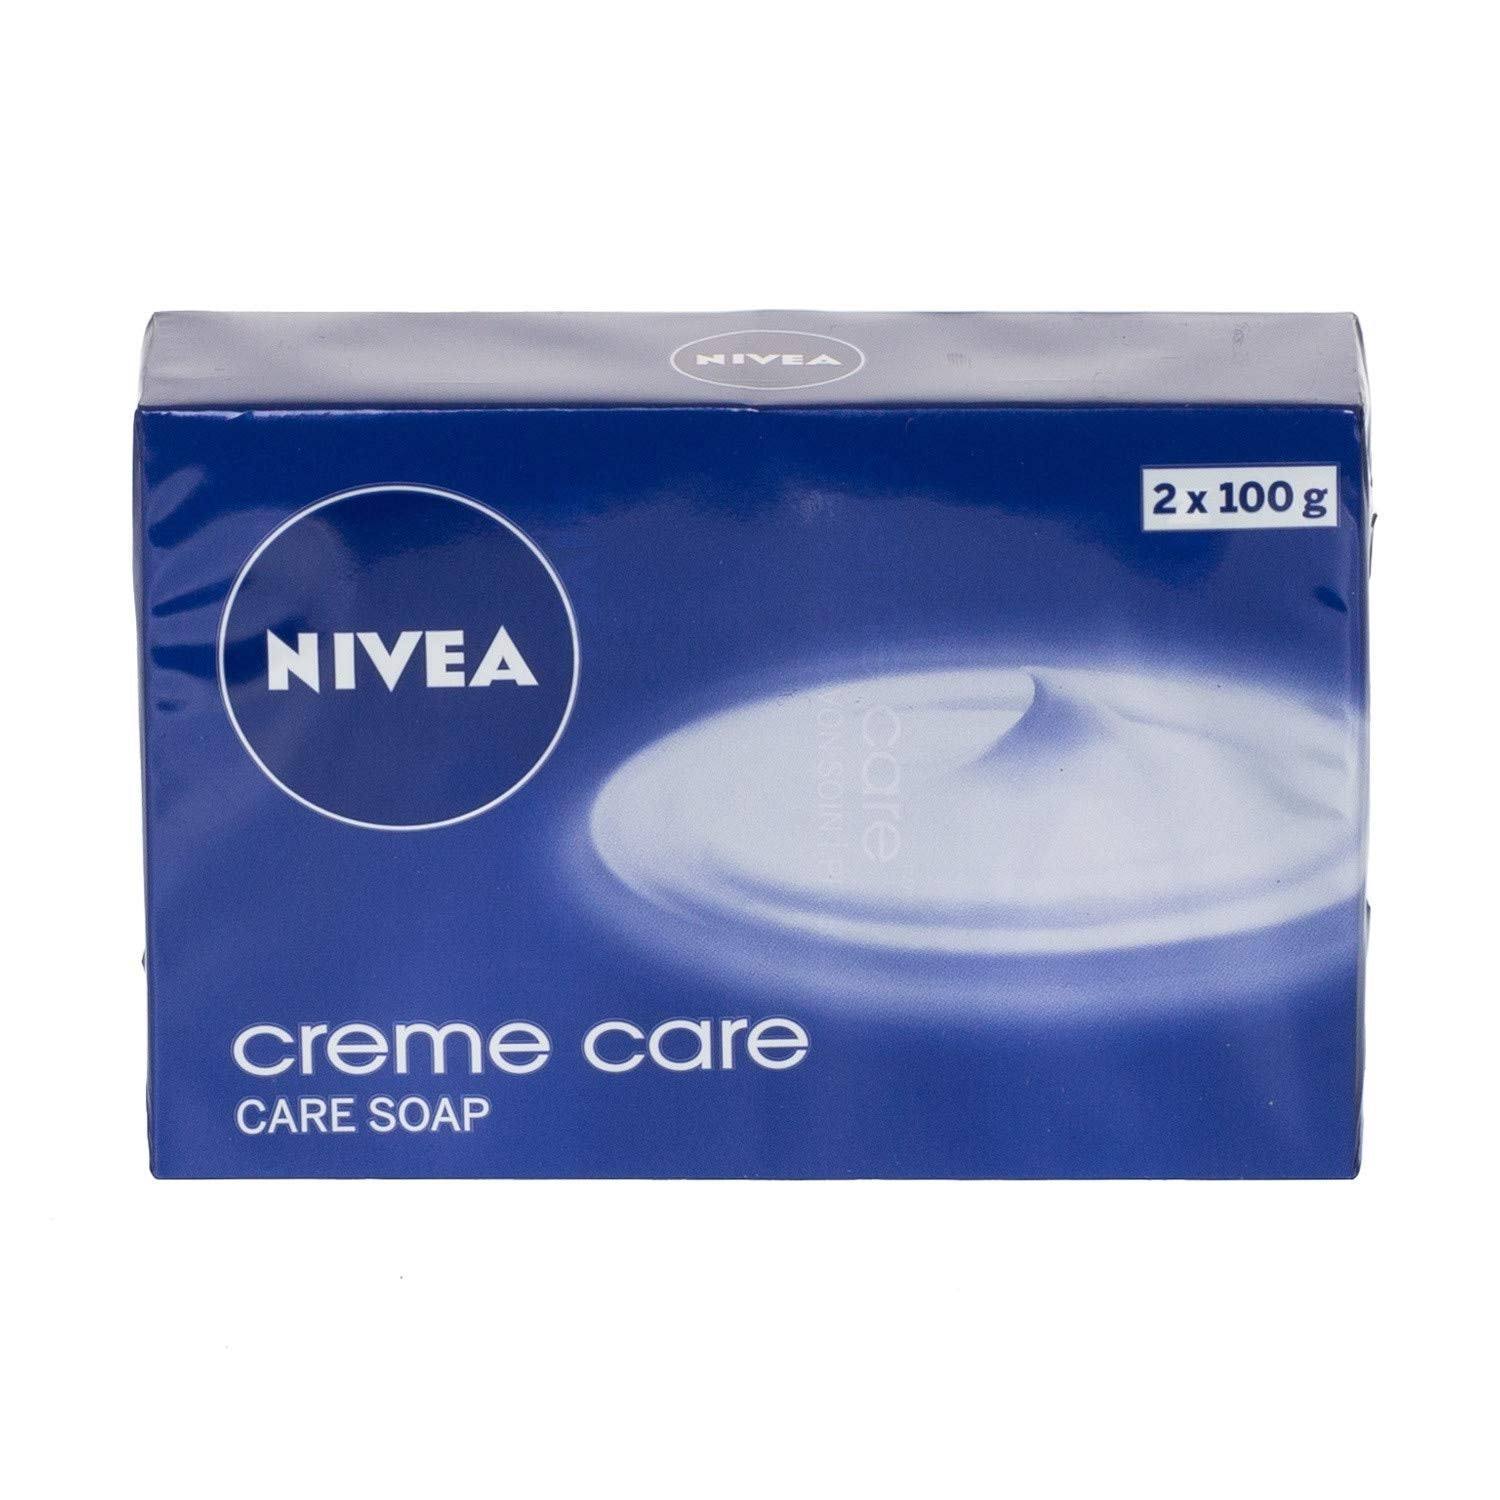 Nivea Creme Care Soap - 2x100g